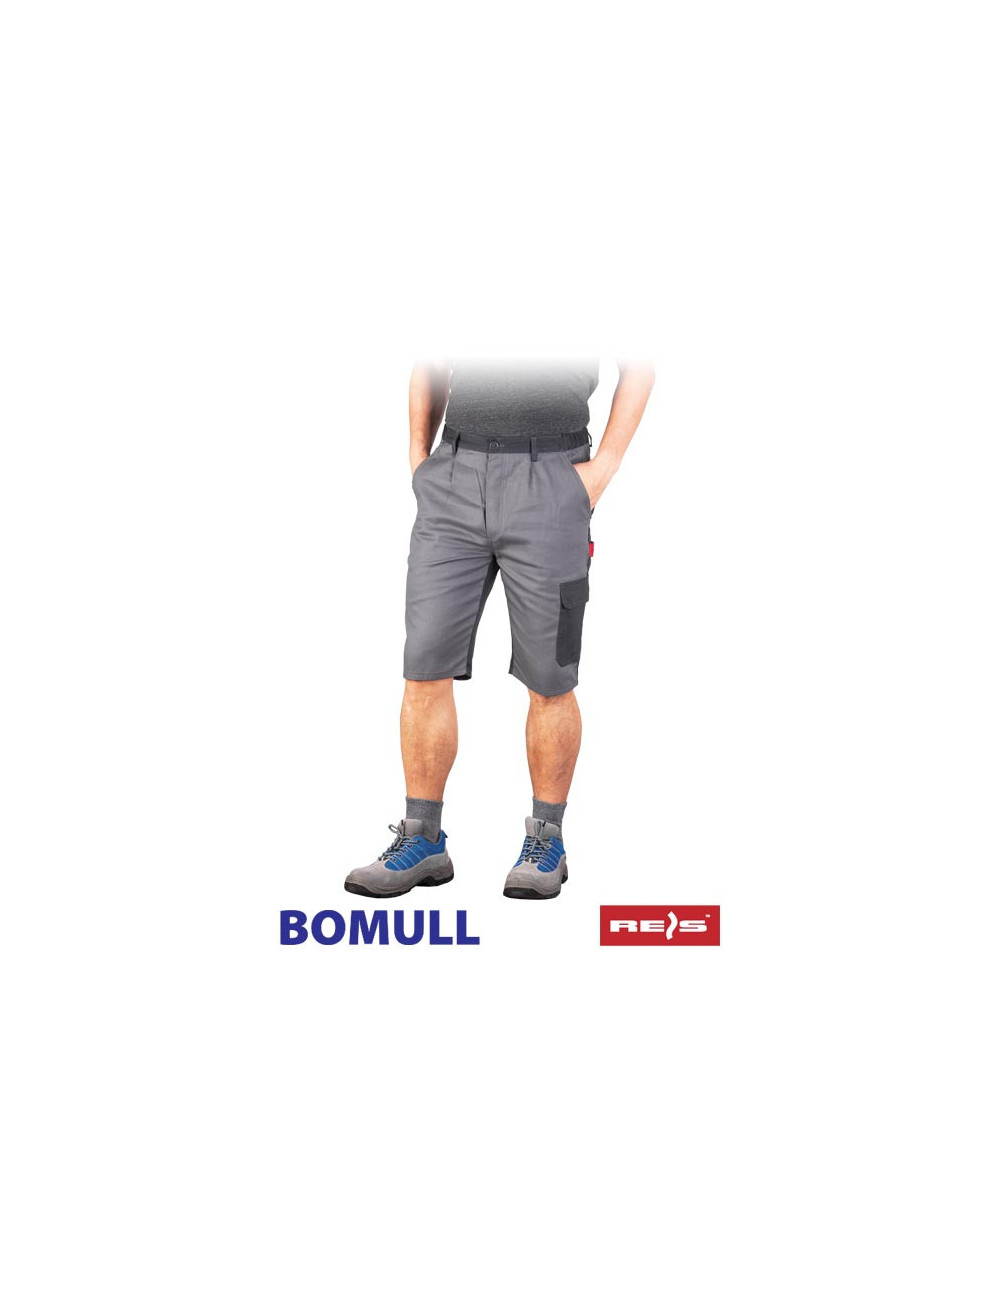 Waist trousers - short bomull-ts sds gray/dark gray Reis